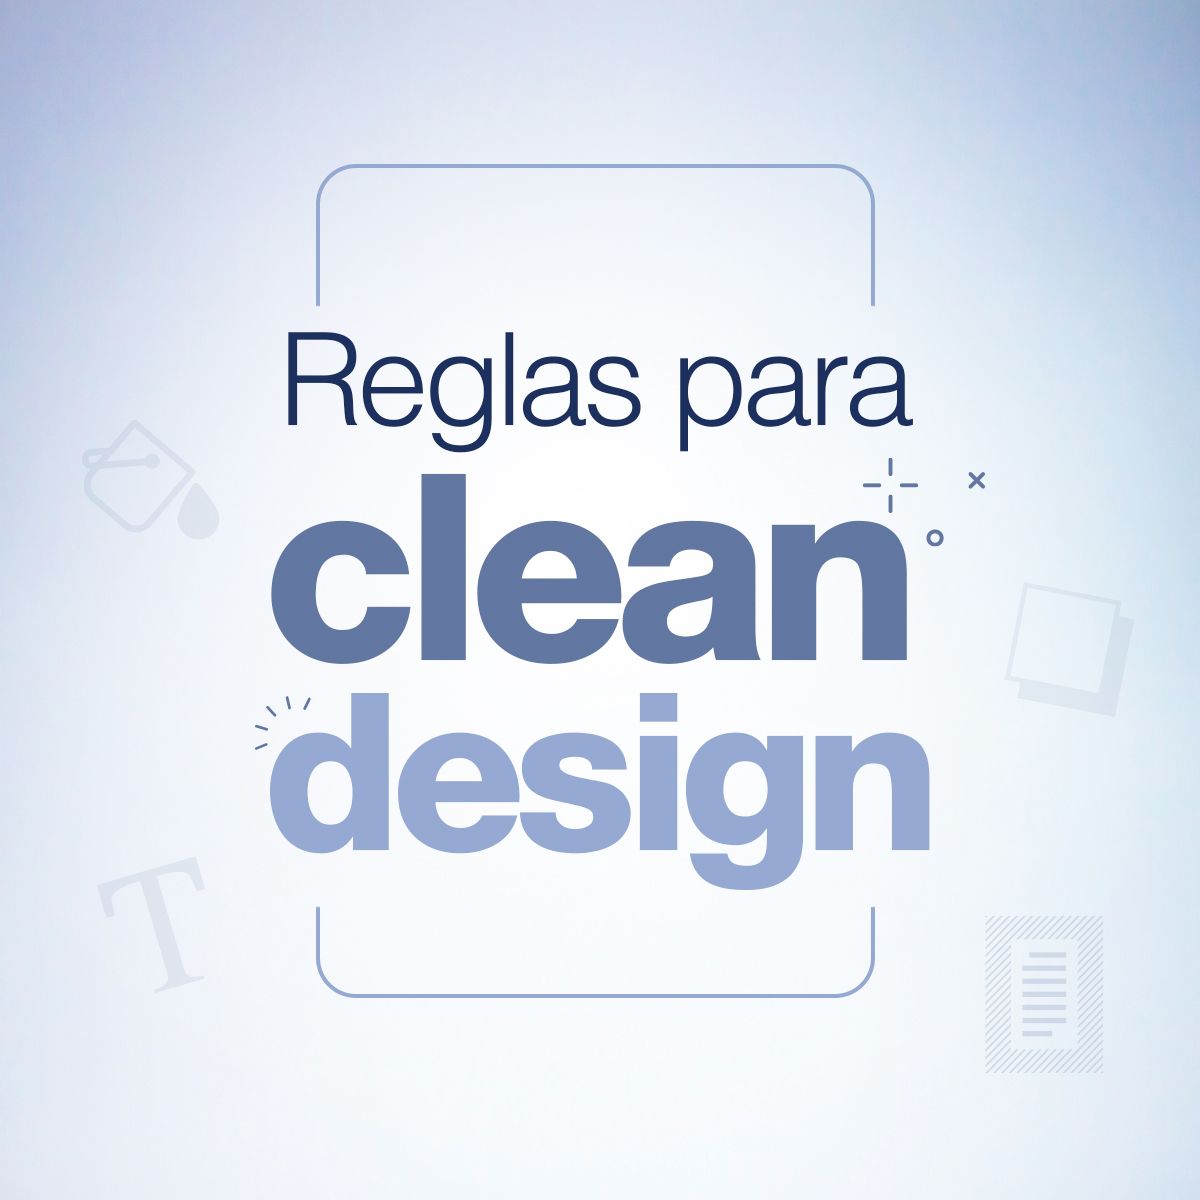 Reglas para clean design